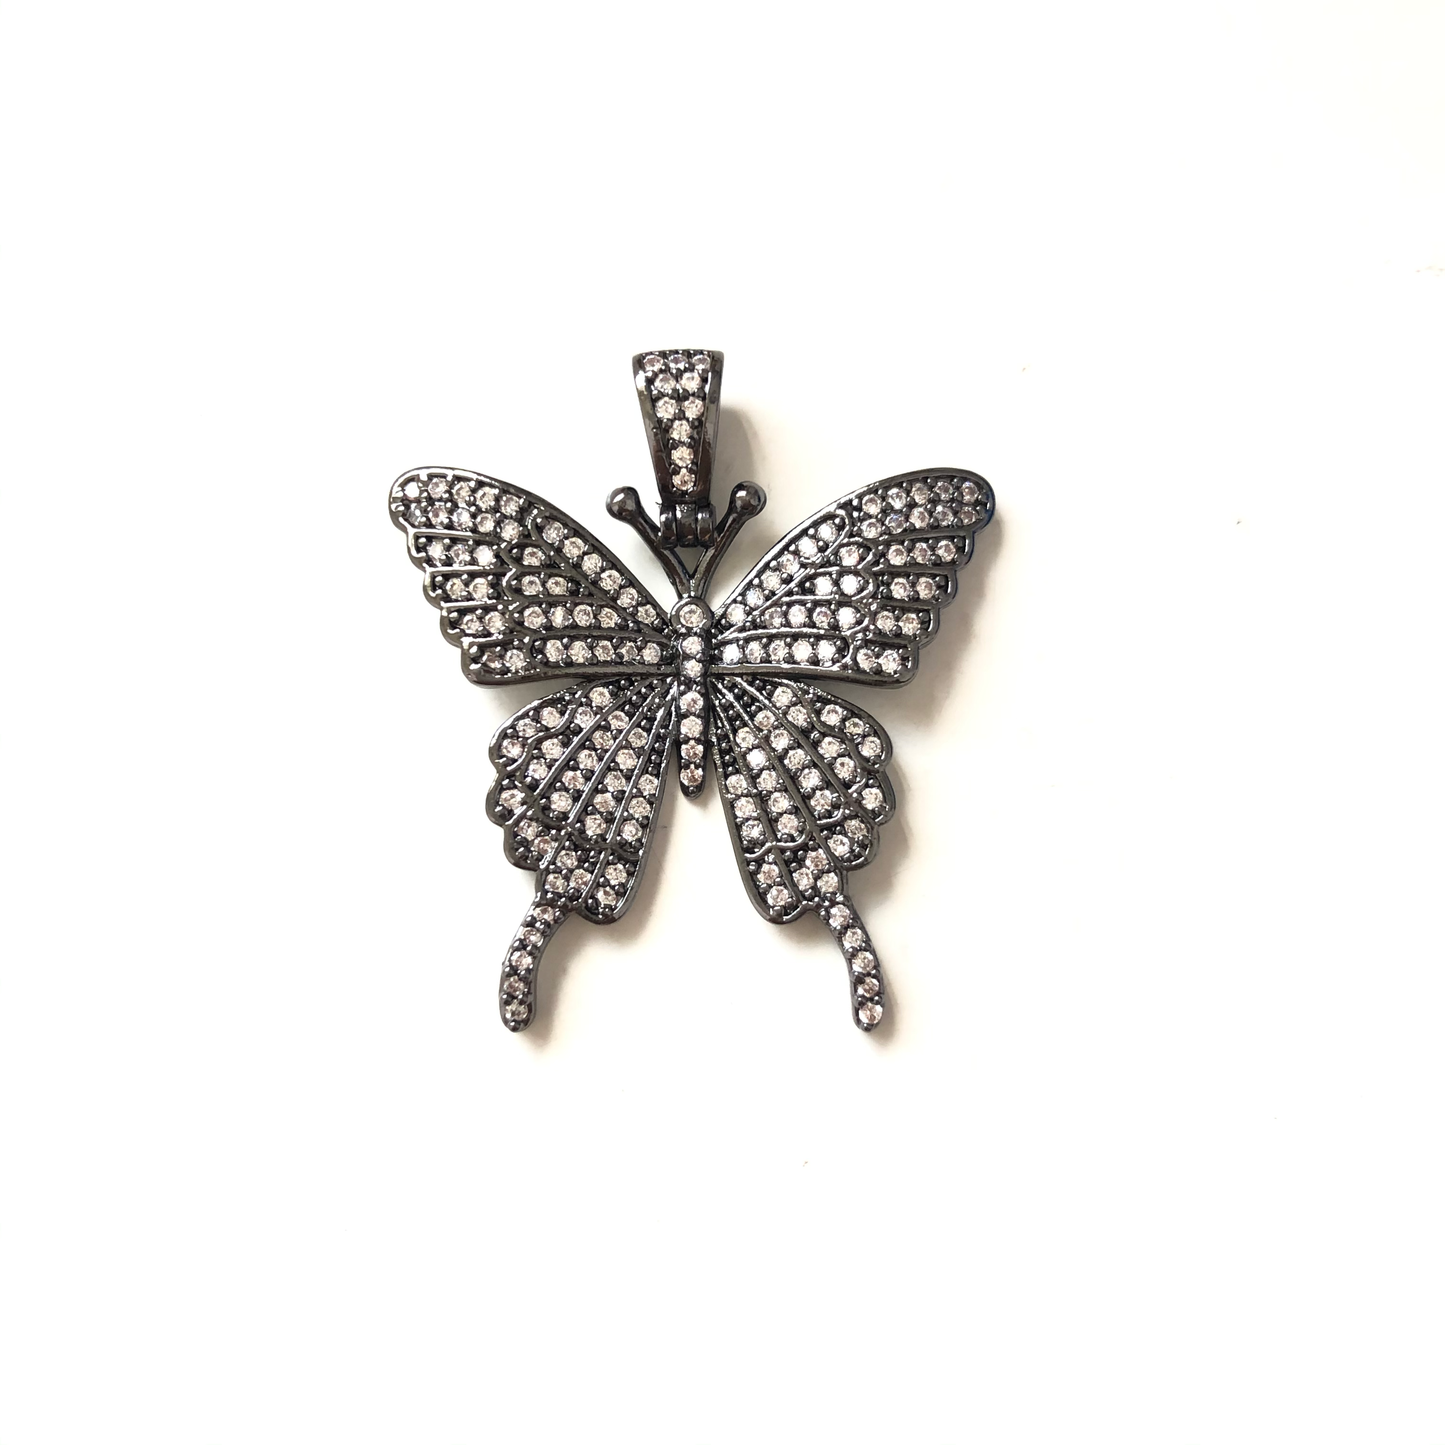 10pcs/lot 35*30mm CZ Paved Butterfly Charms Black CZ Paved Charms Butterflies Large Sizes Charms Beads Beyond